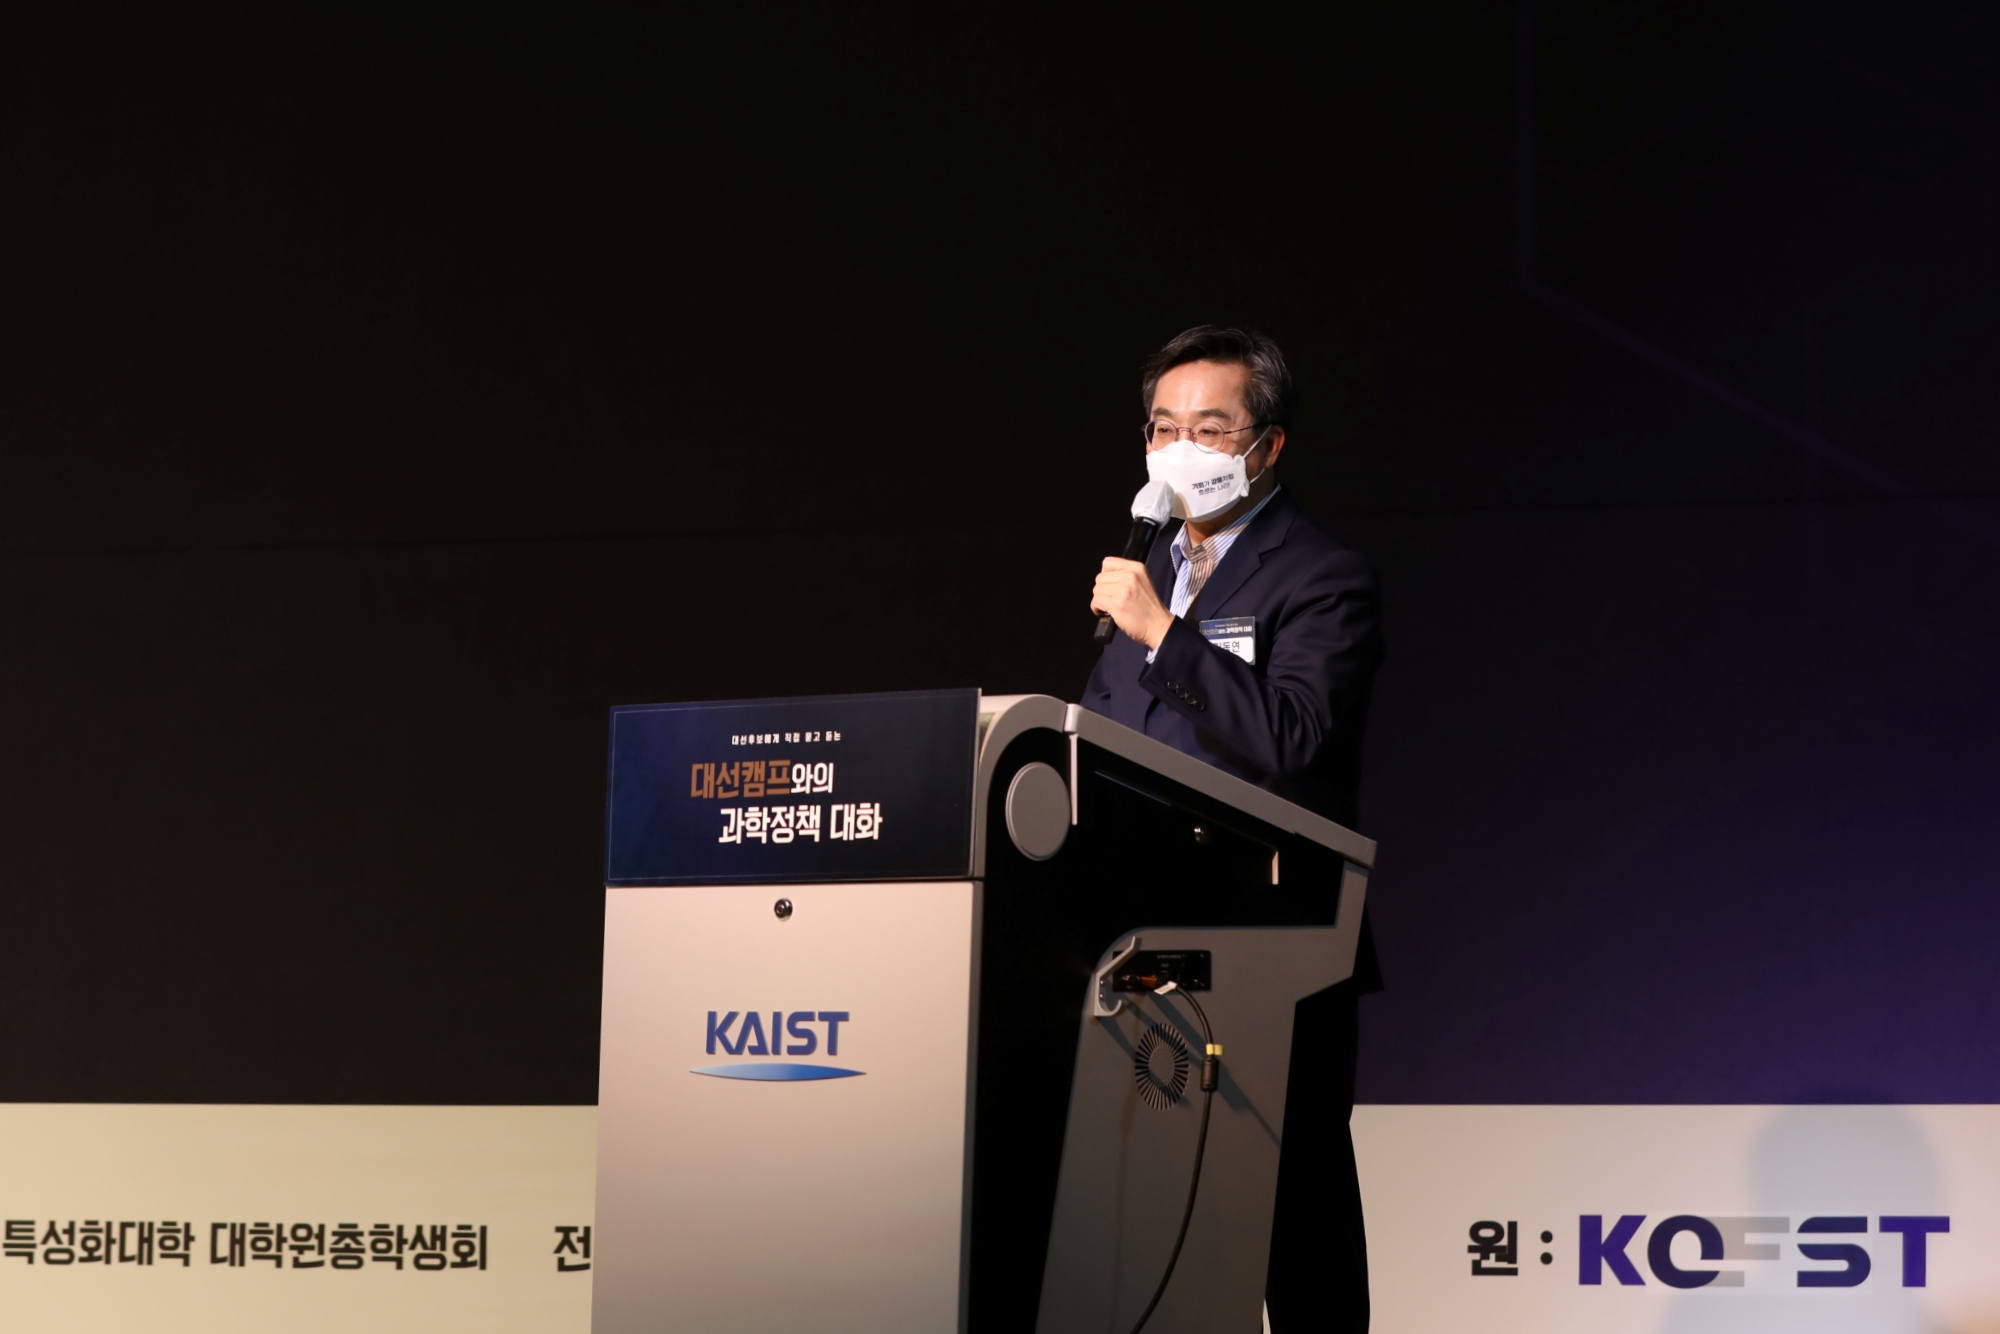 김동연 새로운물결 후보가 과학기술 공약을 발표하고 있다. (사진 제공: KAIST)